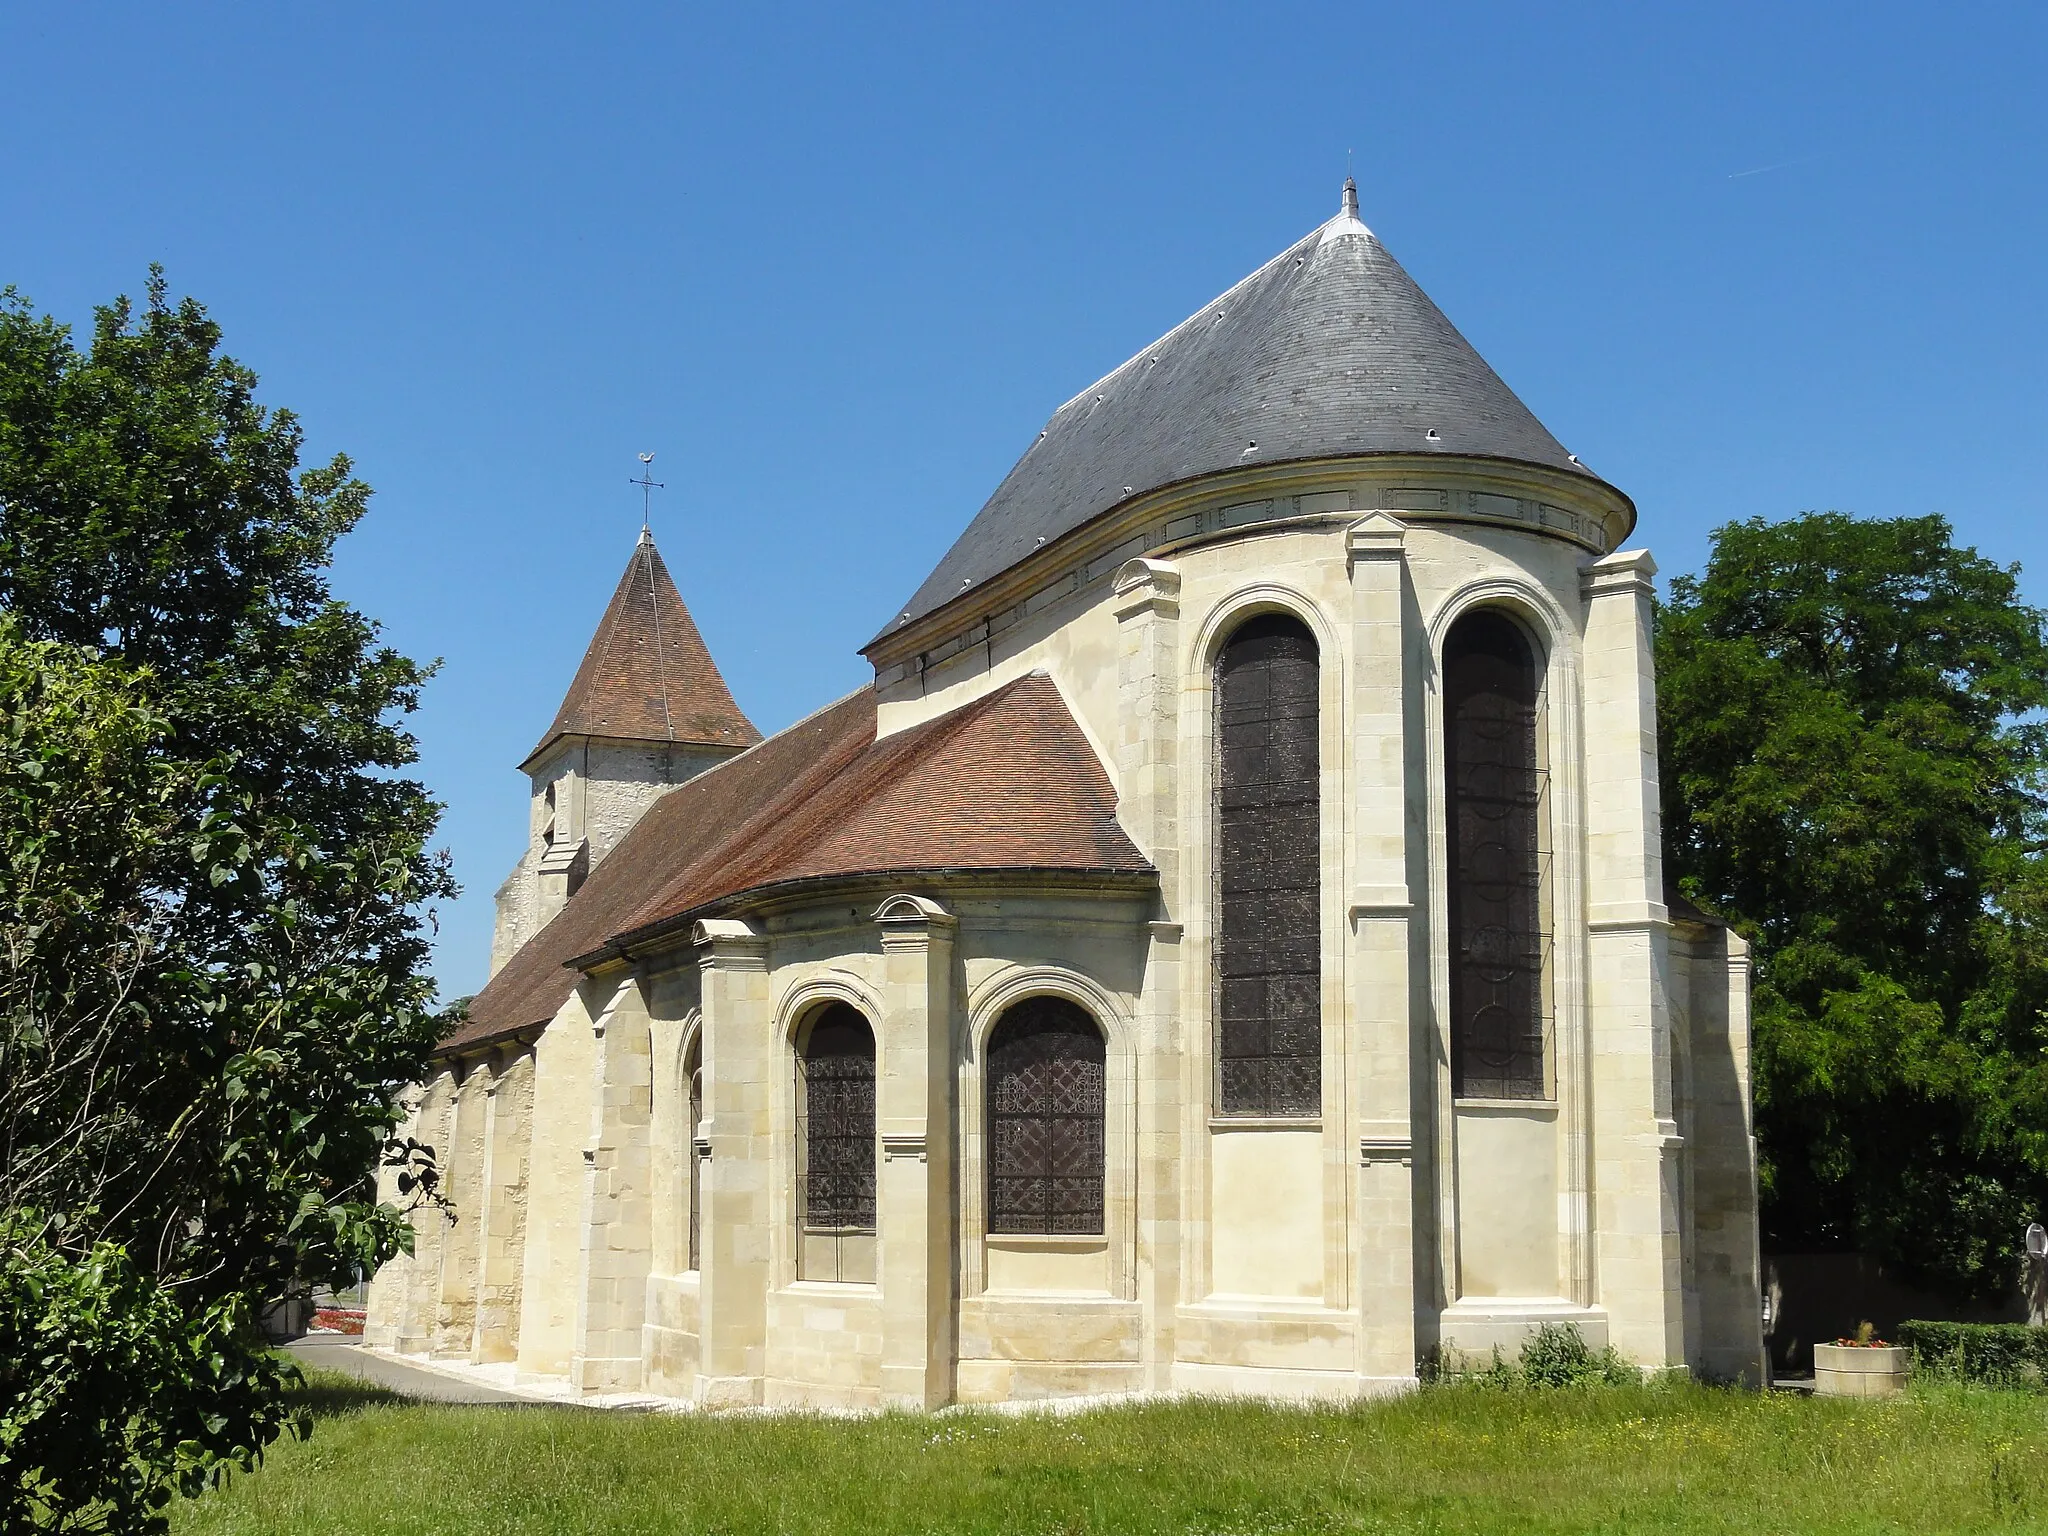 Image of Roissy-en-France